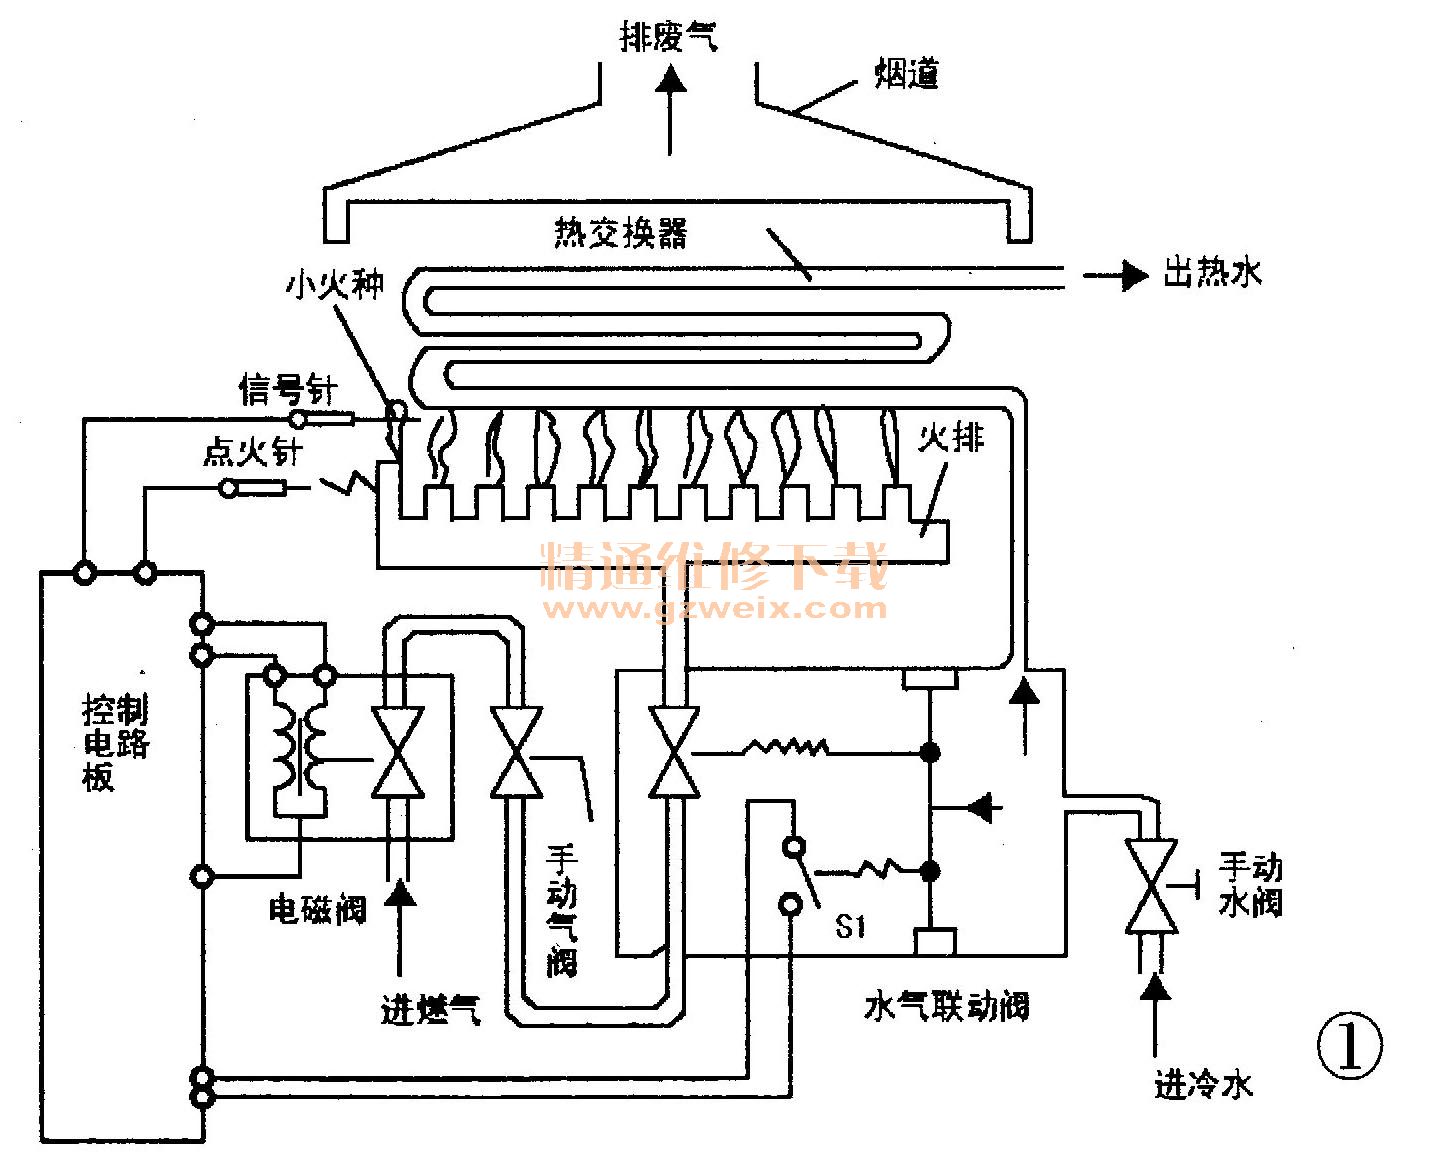 公爵gw-988b型燃气热水器与检修(上)